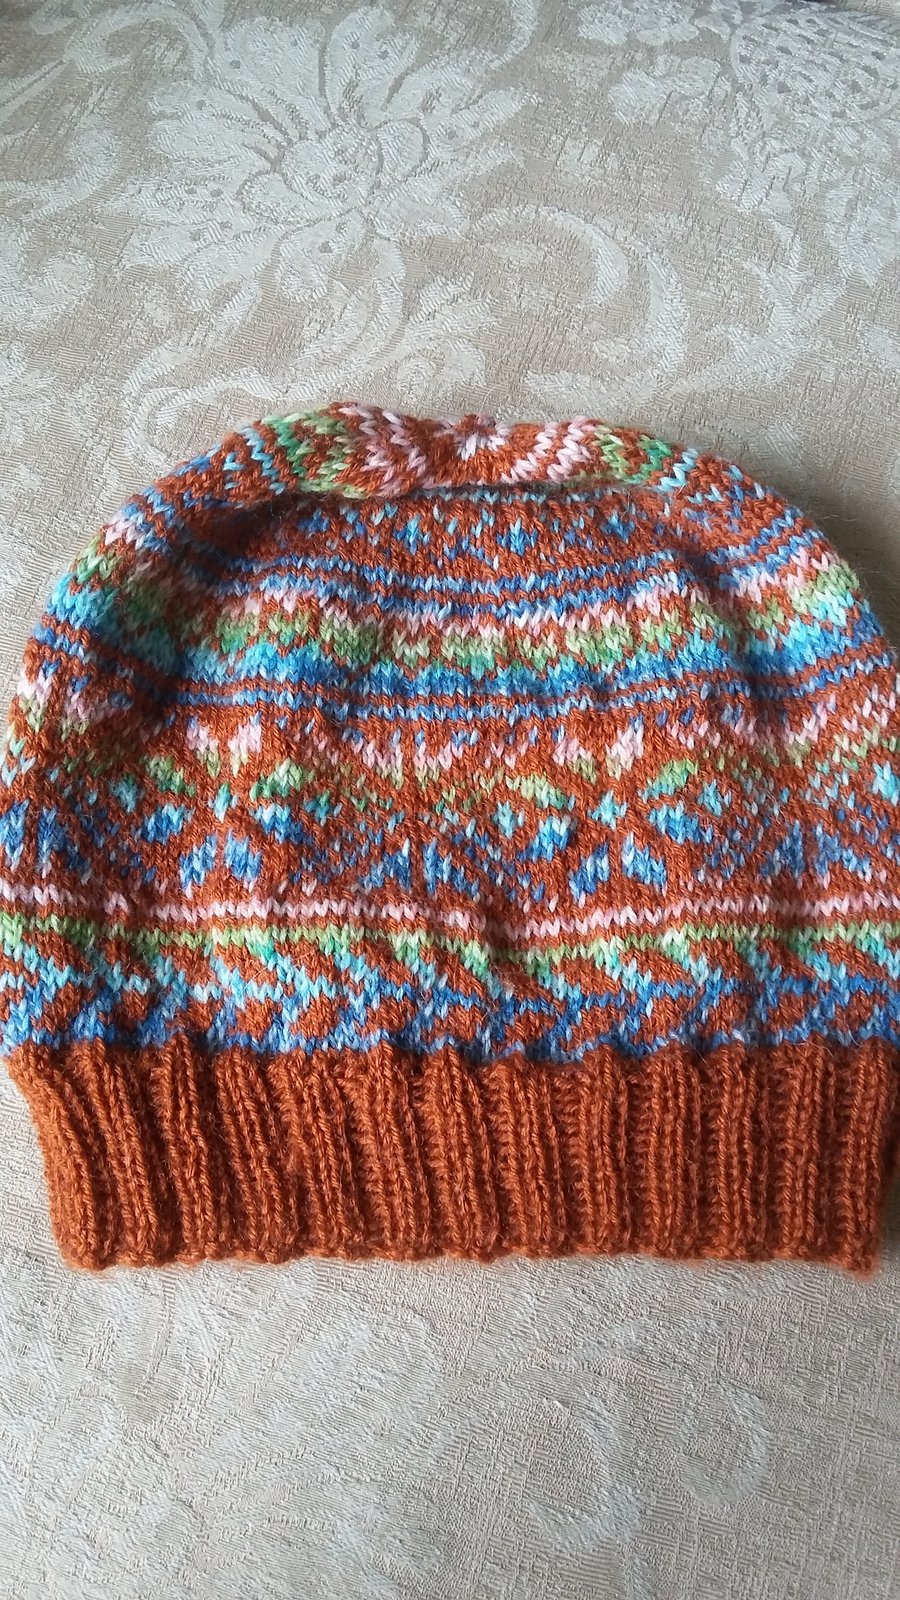 Hand knitted fair isle hat